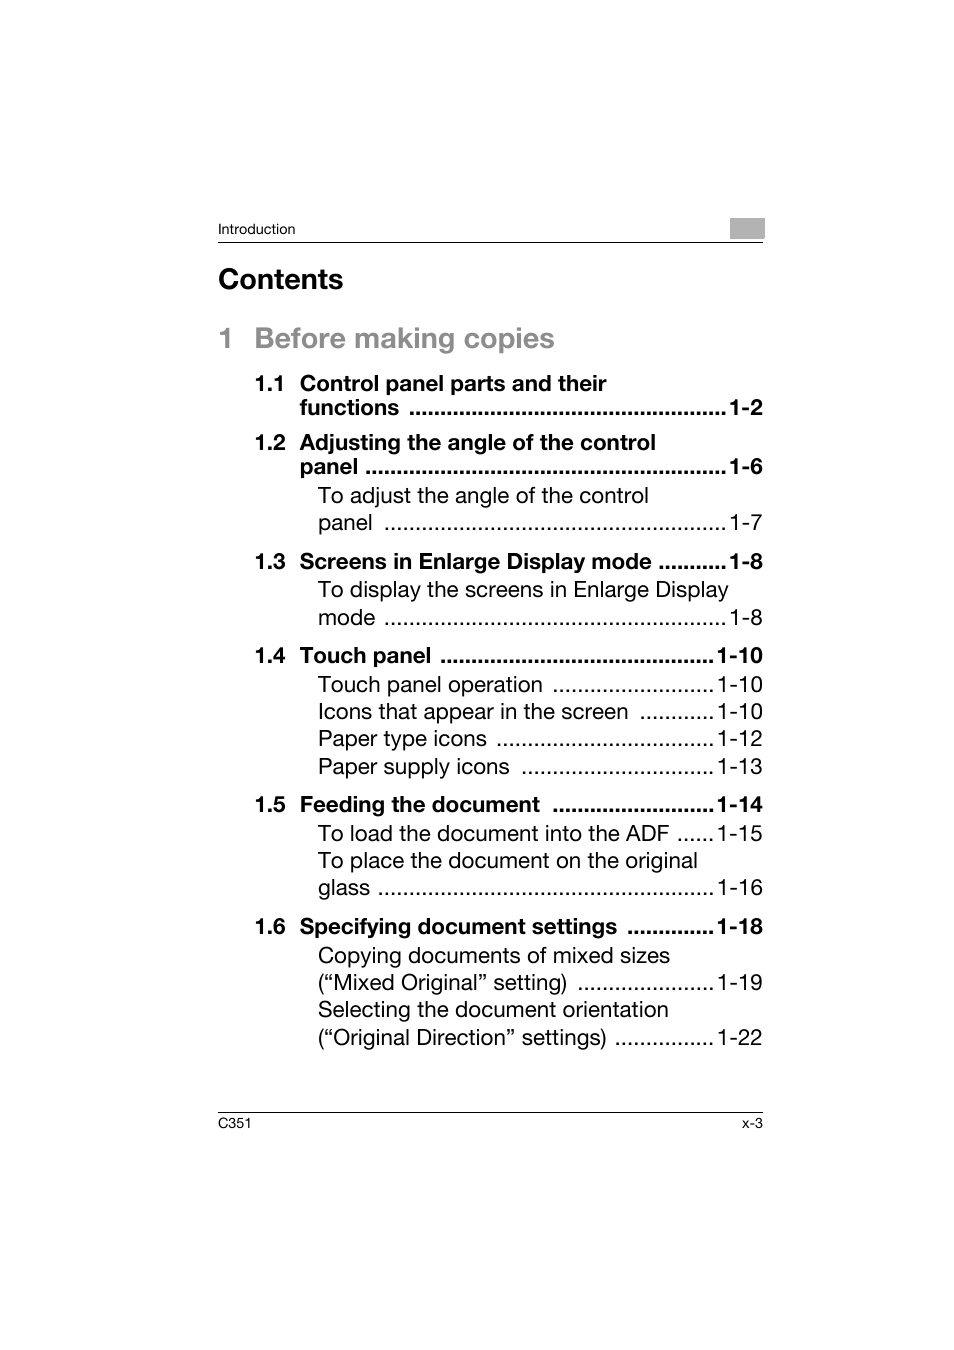 Konica Minolta BIZHUB C351 User Manual | Page 4 / 158